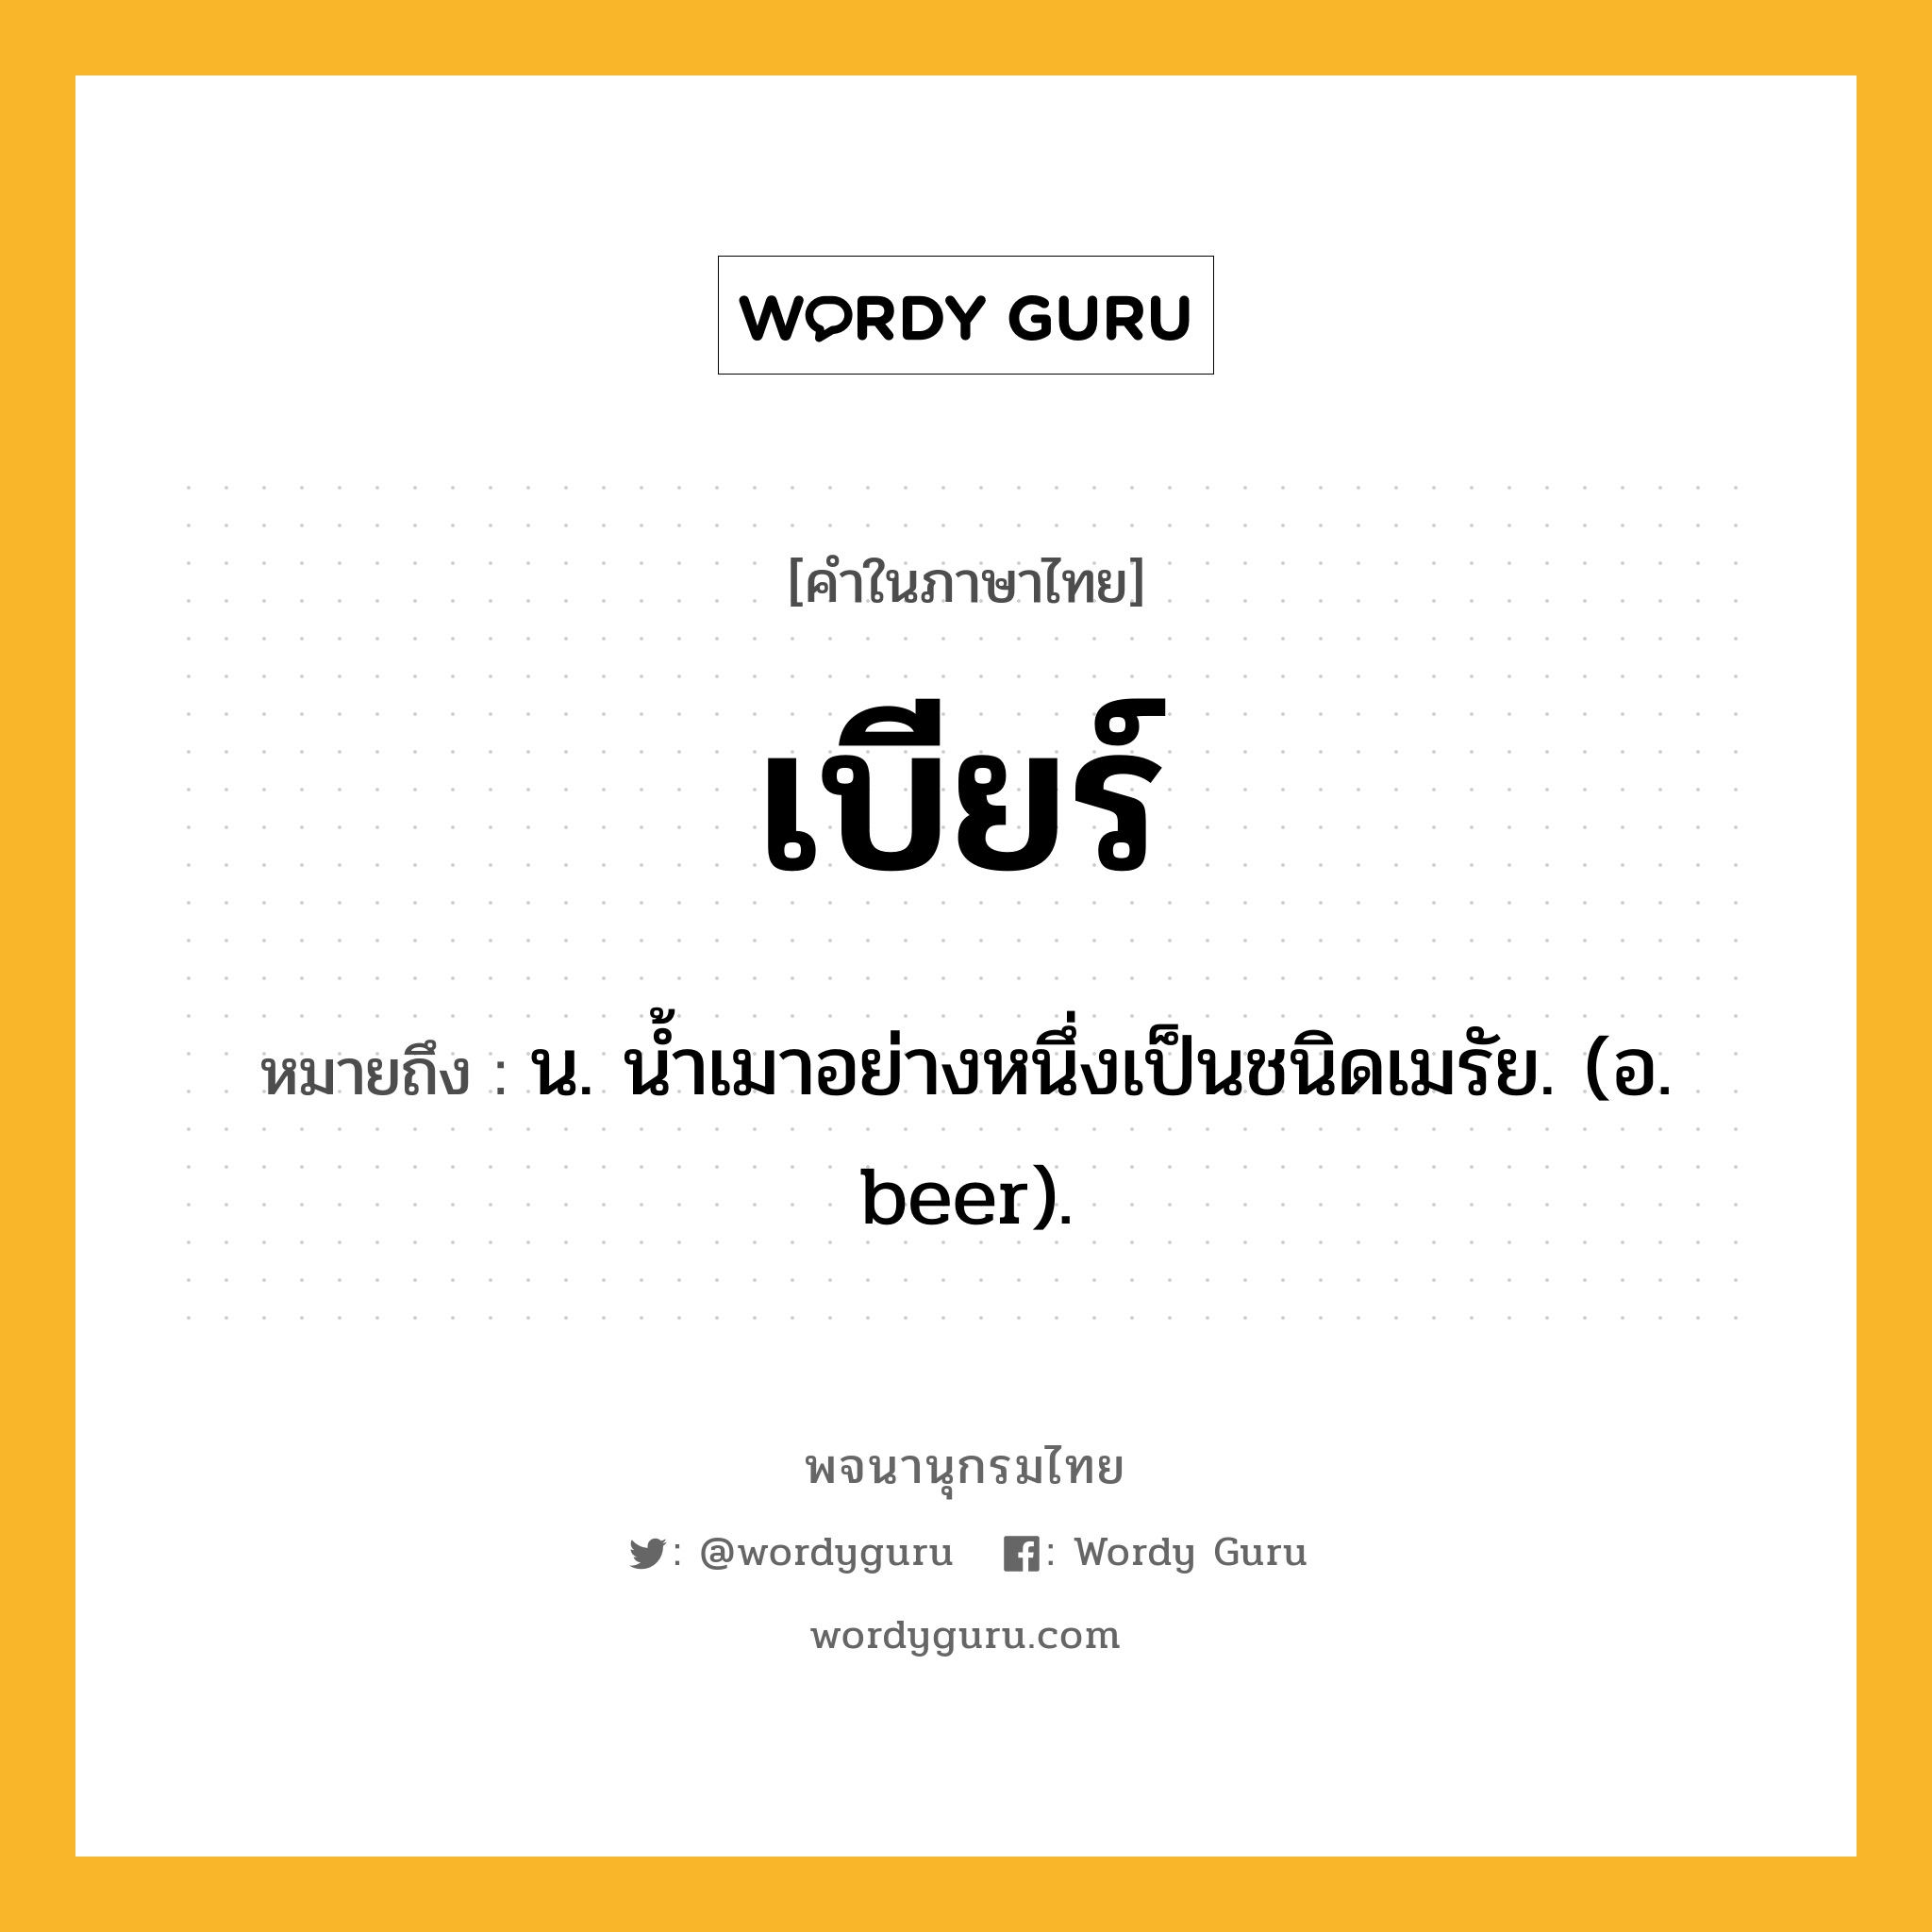 เบียร์ หมายถึงอะไร?, คำในภาษาไทย เบียร์ หมายถึง น. นํ้าเมาอย่างหนึ่งเป็นชนิดเมรัย. (อ. beer).